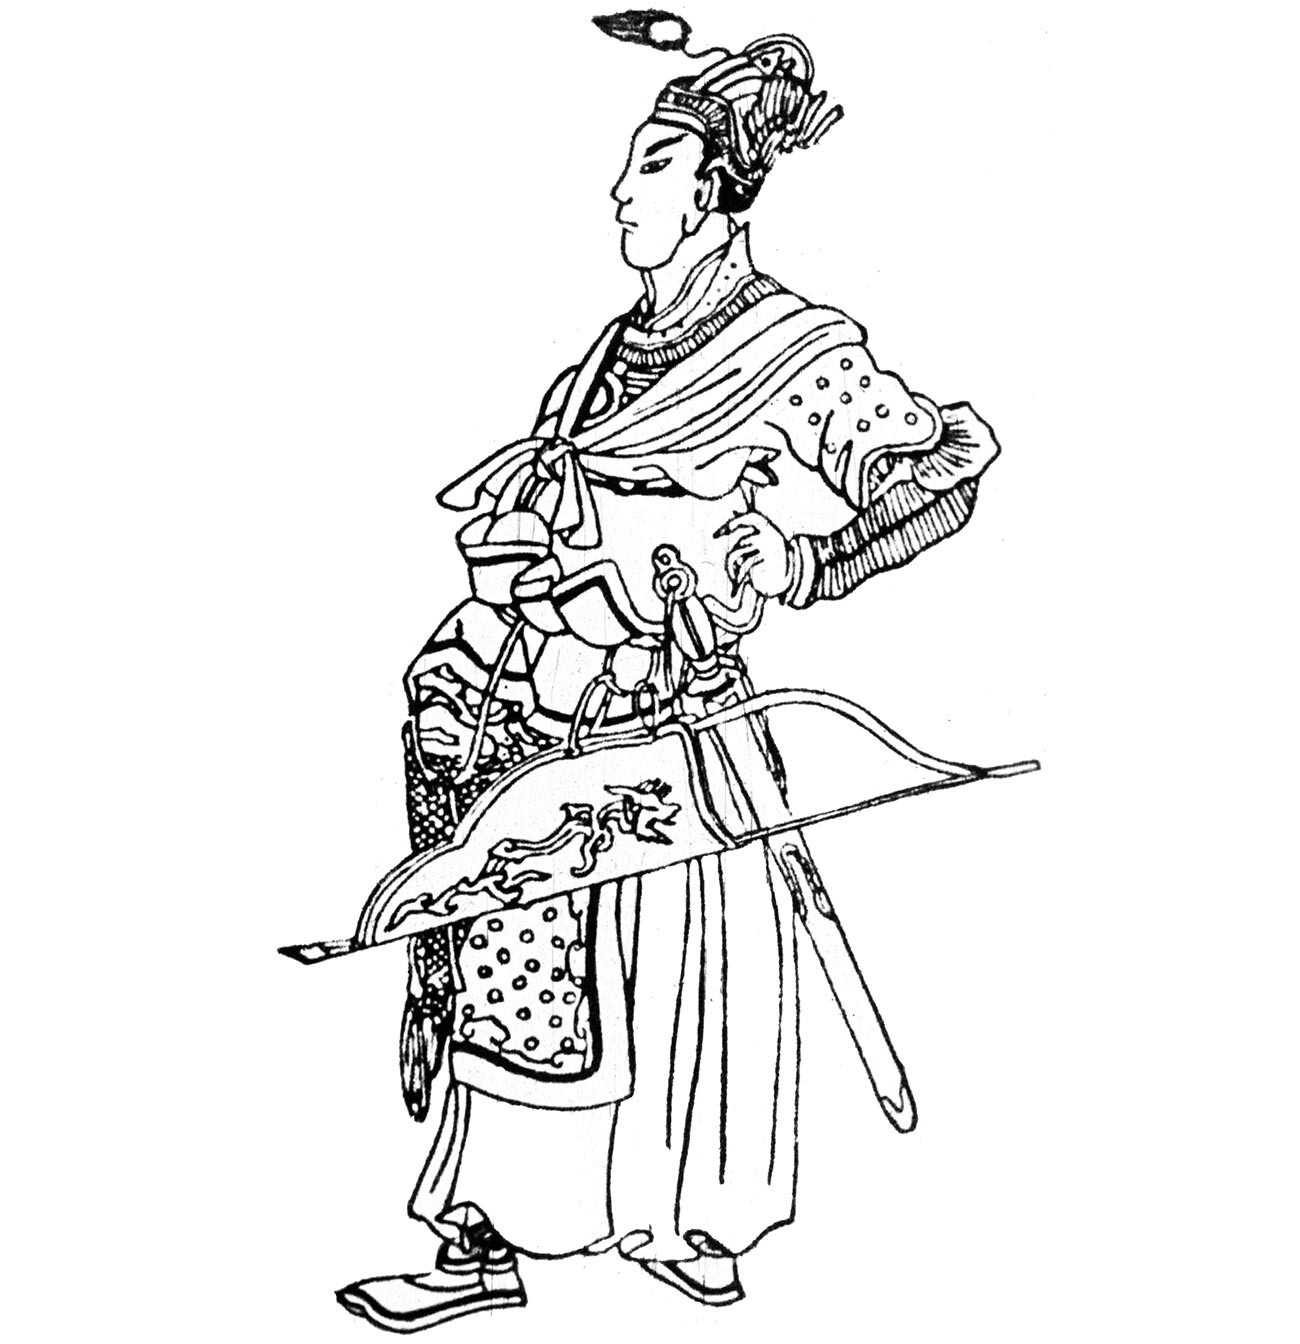 Batu Kan en un grabado chino de la Edad Media
